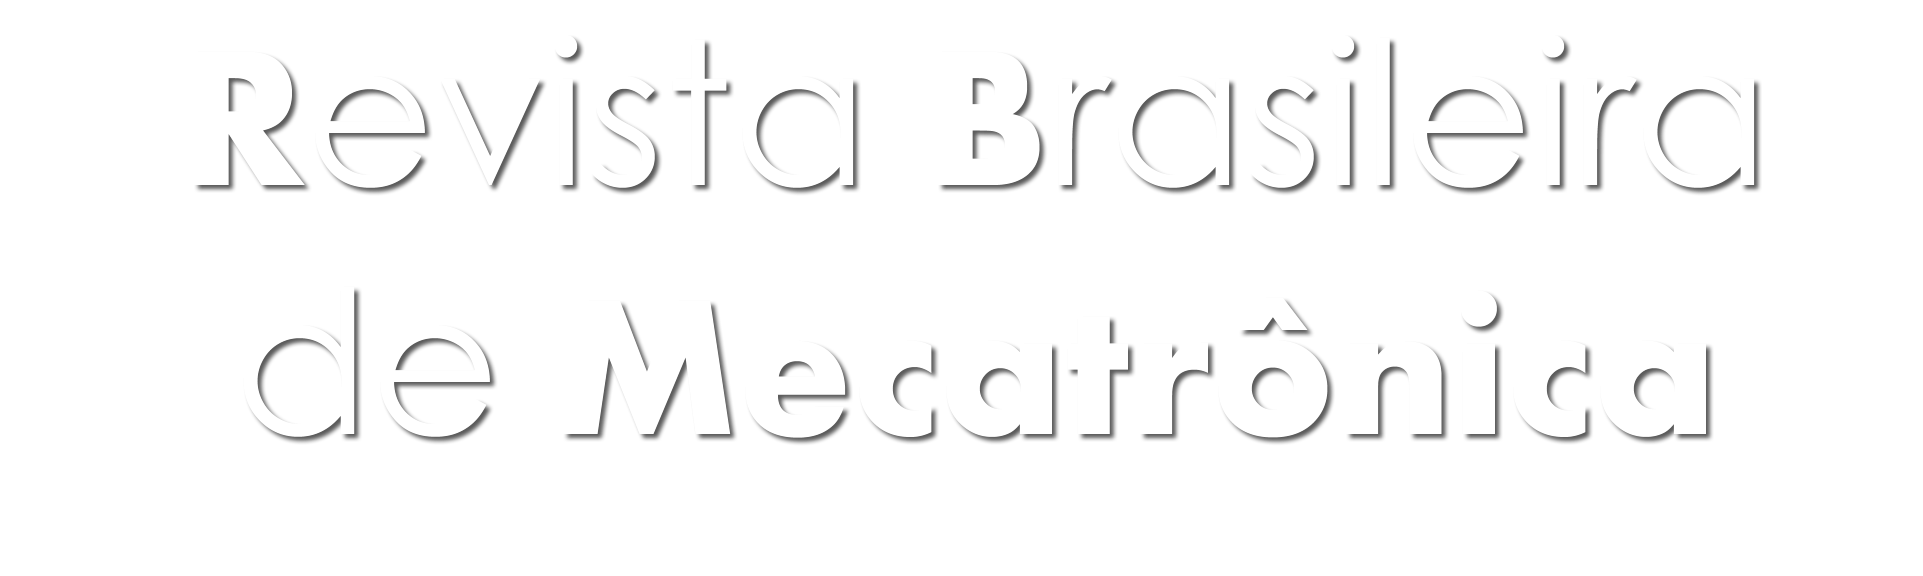 Revista Brasileira de Mecatrônica